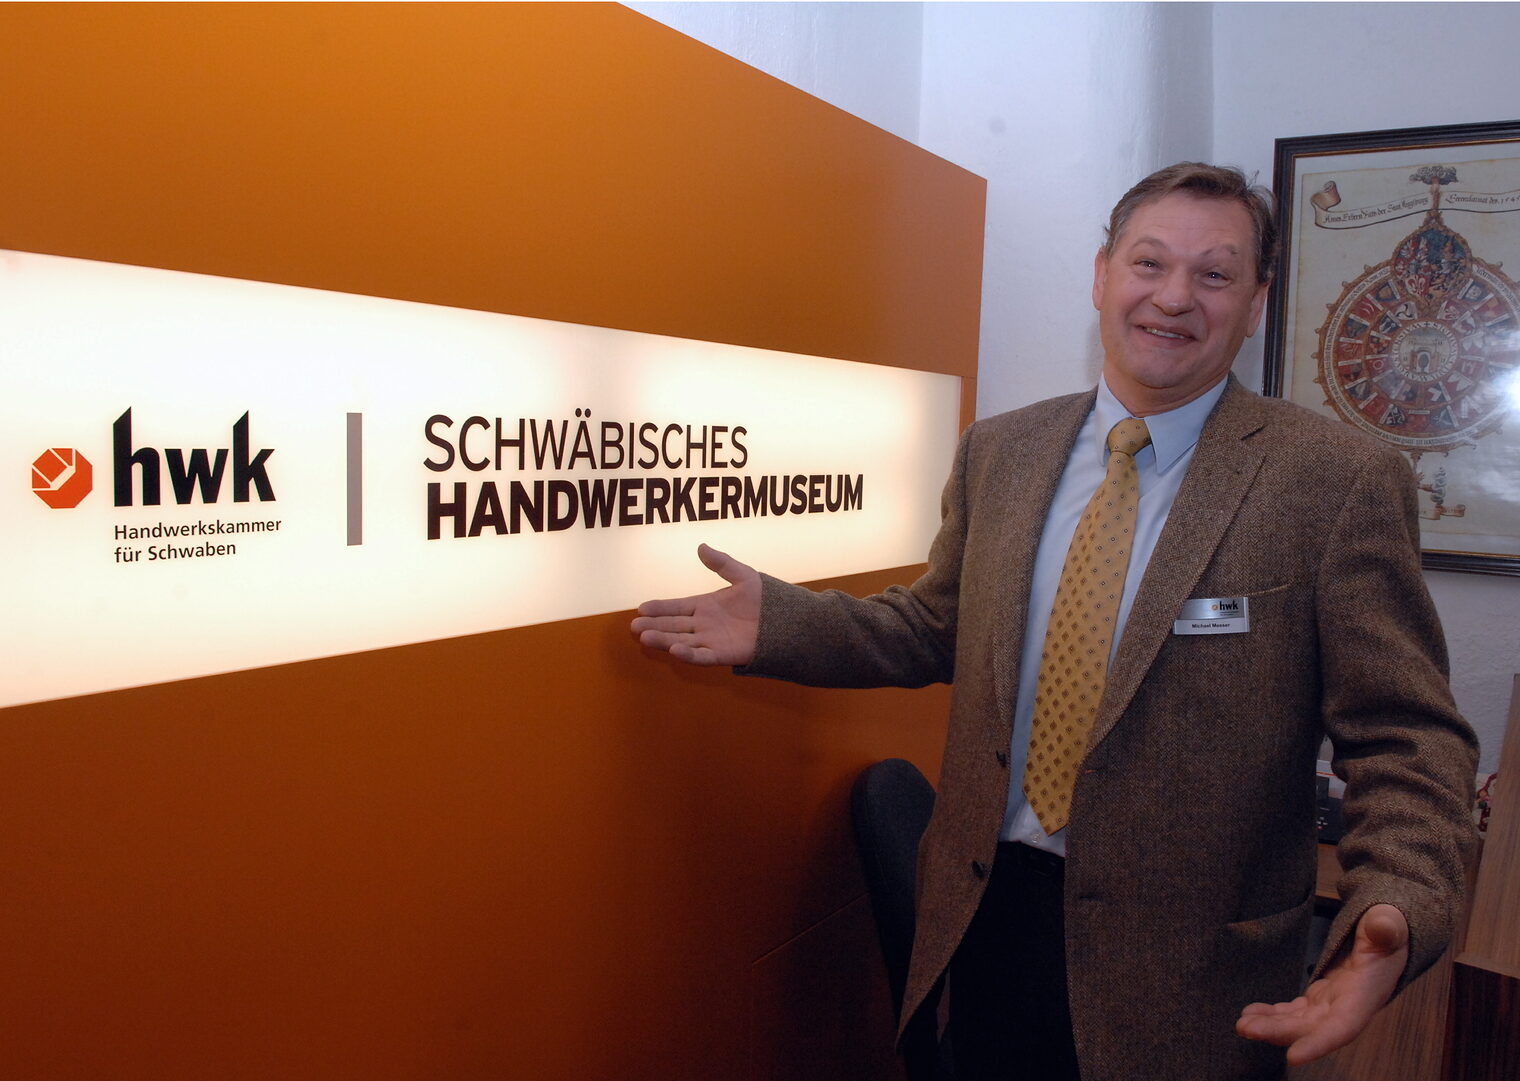 Museumsleiter Michael Messer ist happy mit der modernen Gestaltung und der neuen Corporate Identity fürs Schwäbische Handwerkermuseum.